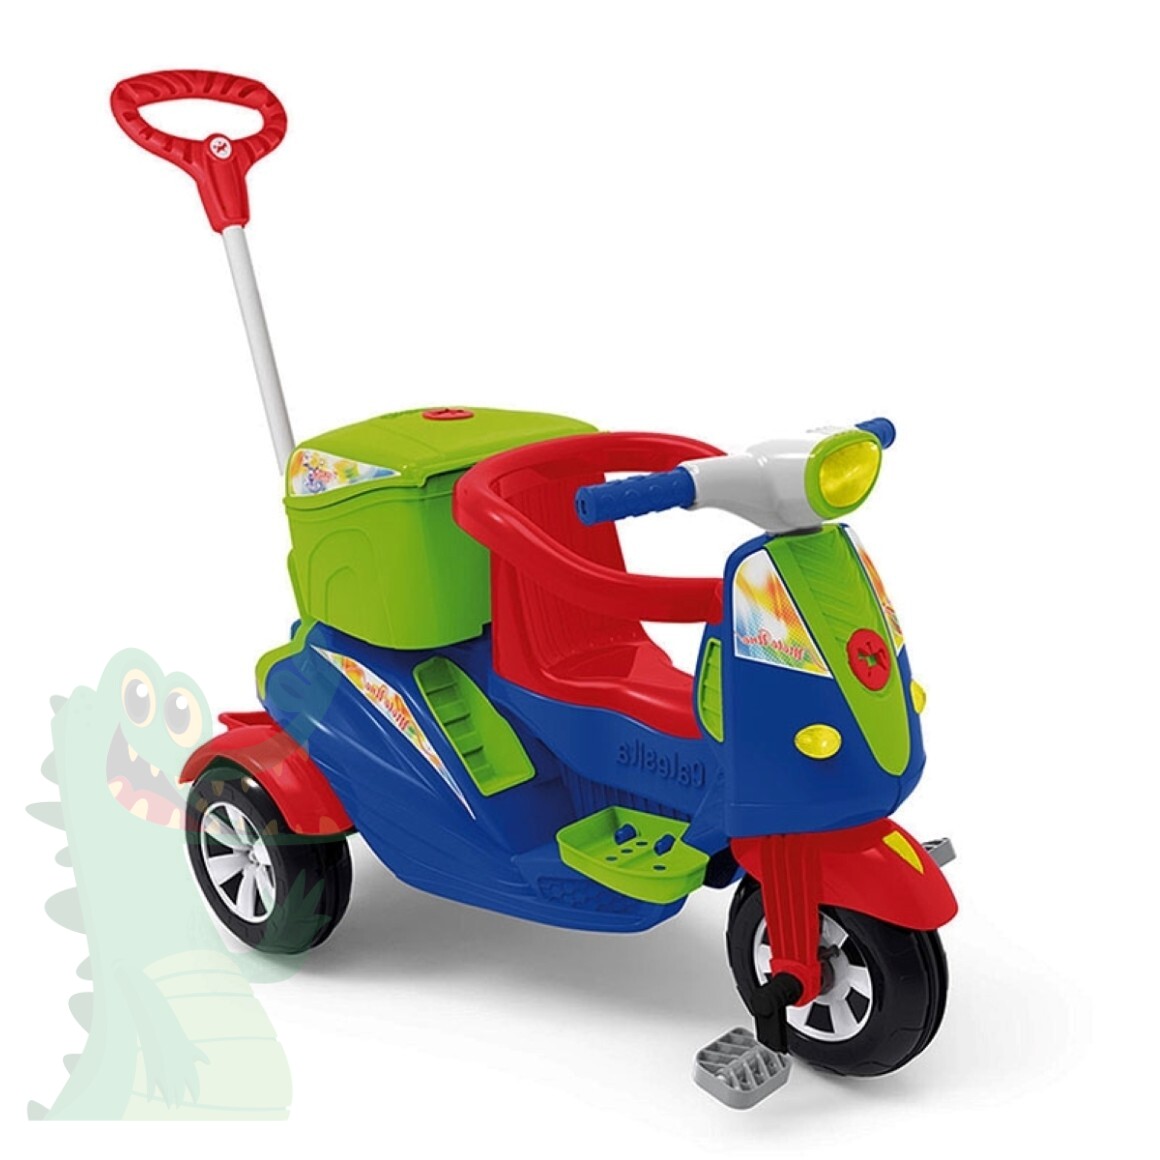 Triciclo Infantil Calesita Velocita - 2 em 1 - Pedal e Passeio com Aro -  Rosa L